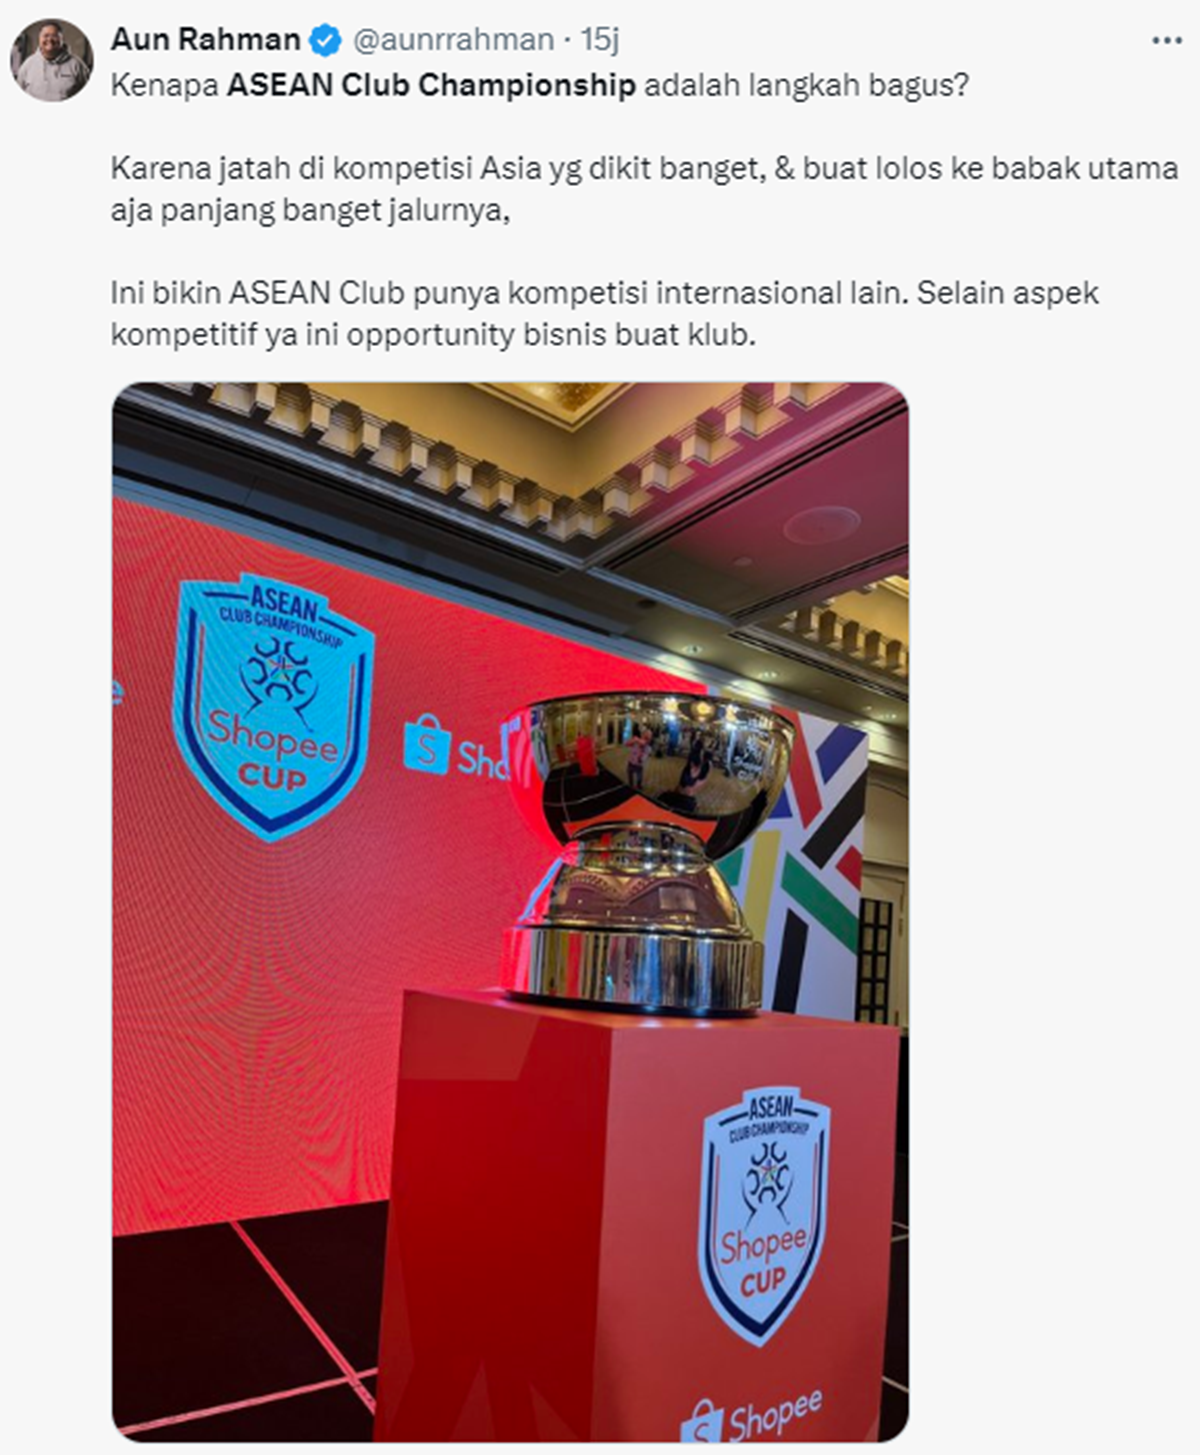 Shopee Cup ASEAN Club Championship